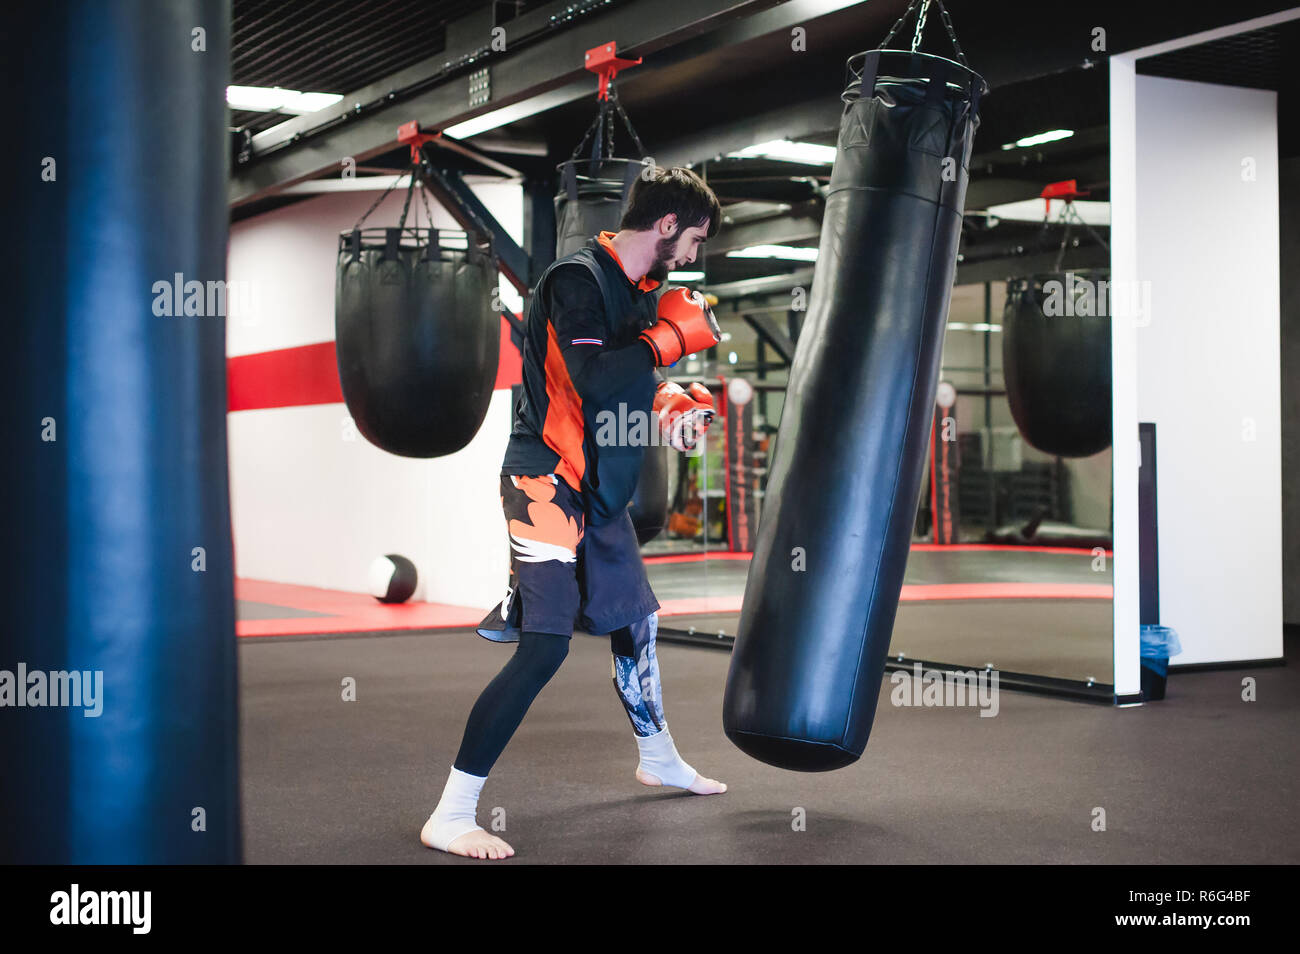 Professional Muay Thai Kämpfer. Männliche Boxer im Training Sportkleidung,  eine Übung in der Sporthalle, Training mit Boxsack, bläst Stockfotografie -  Alamy